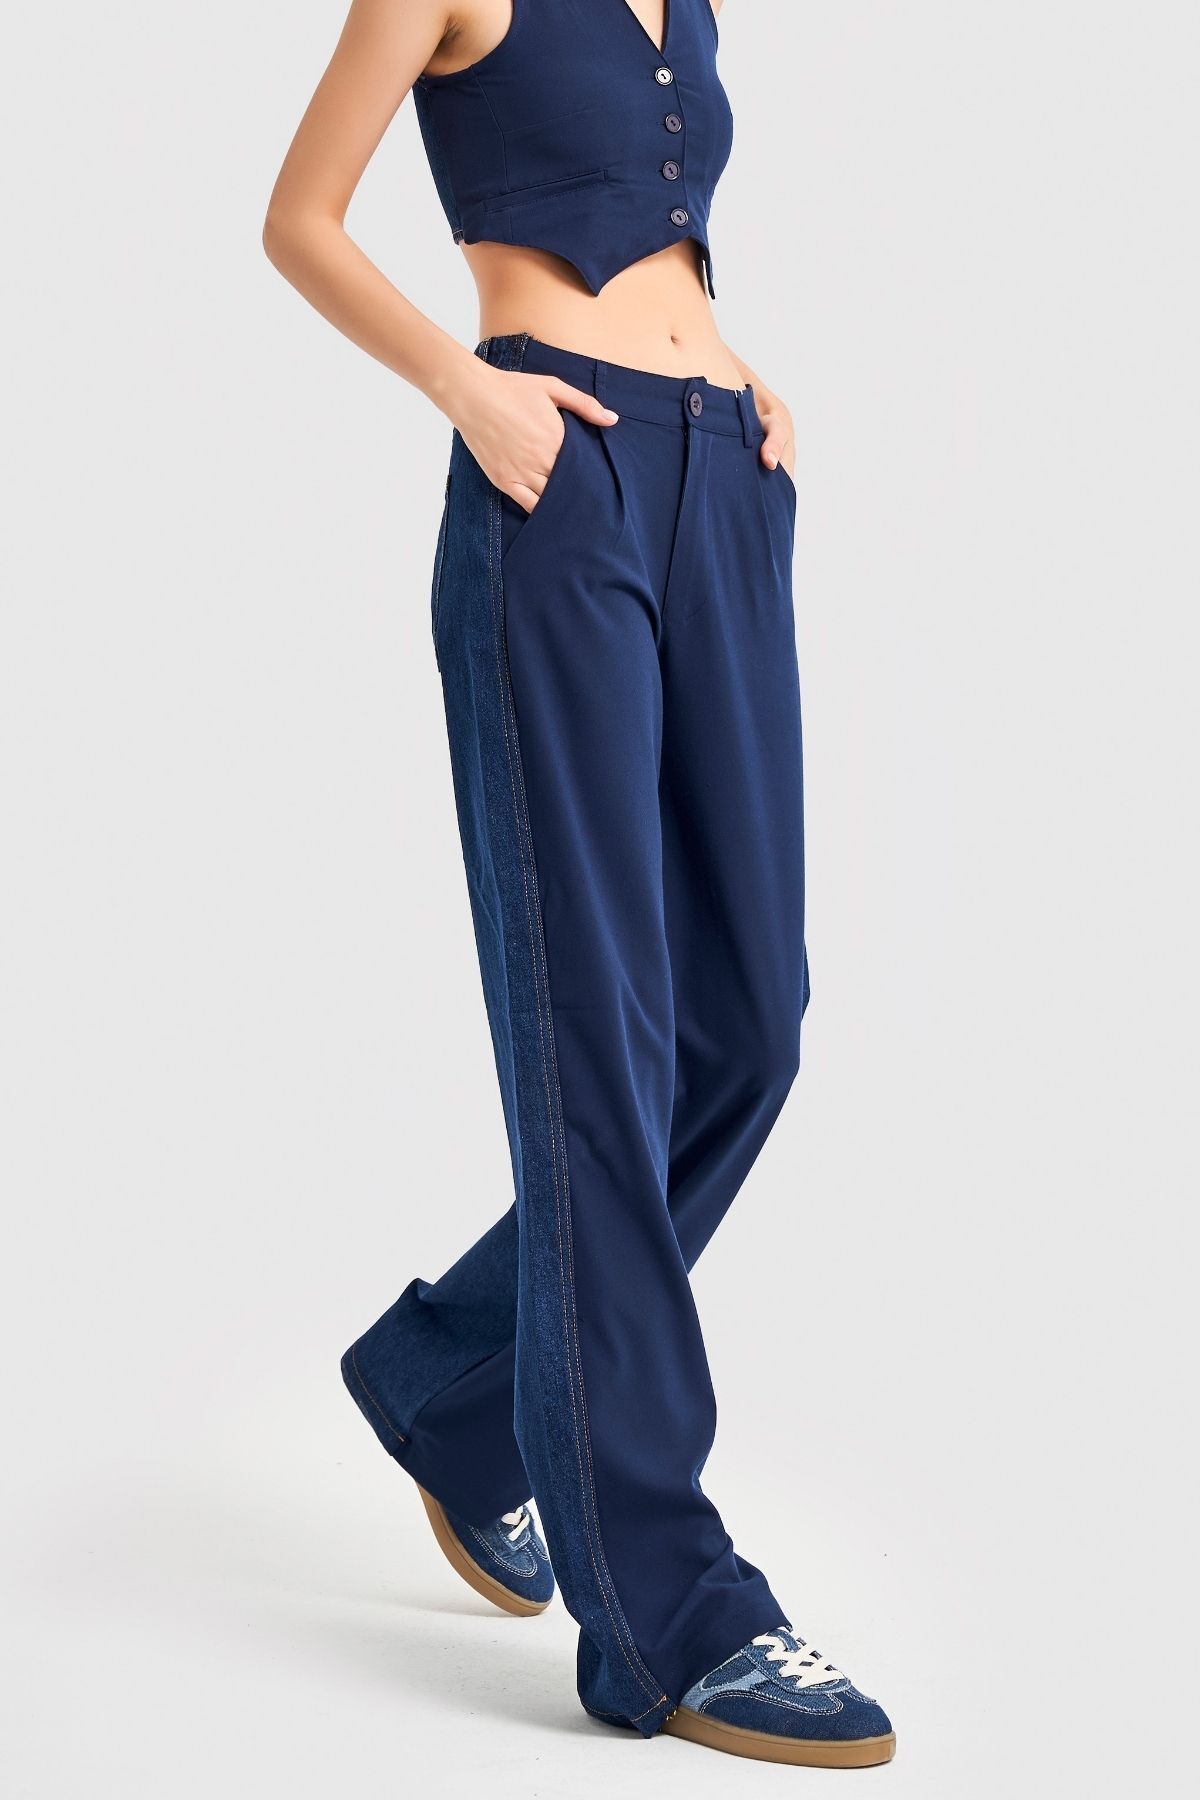 its basic Kadın Lacivert Kot Rengi Kumaş Denim Parçalı Orta Bel Pileli Pantolon